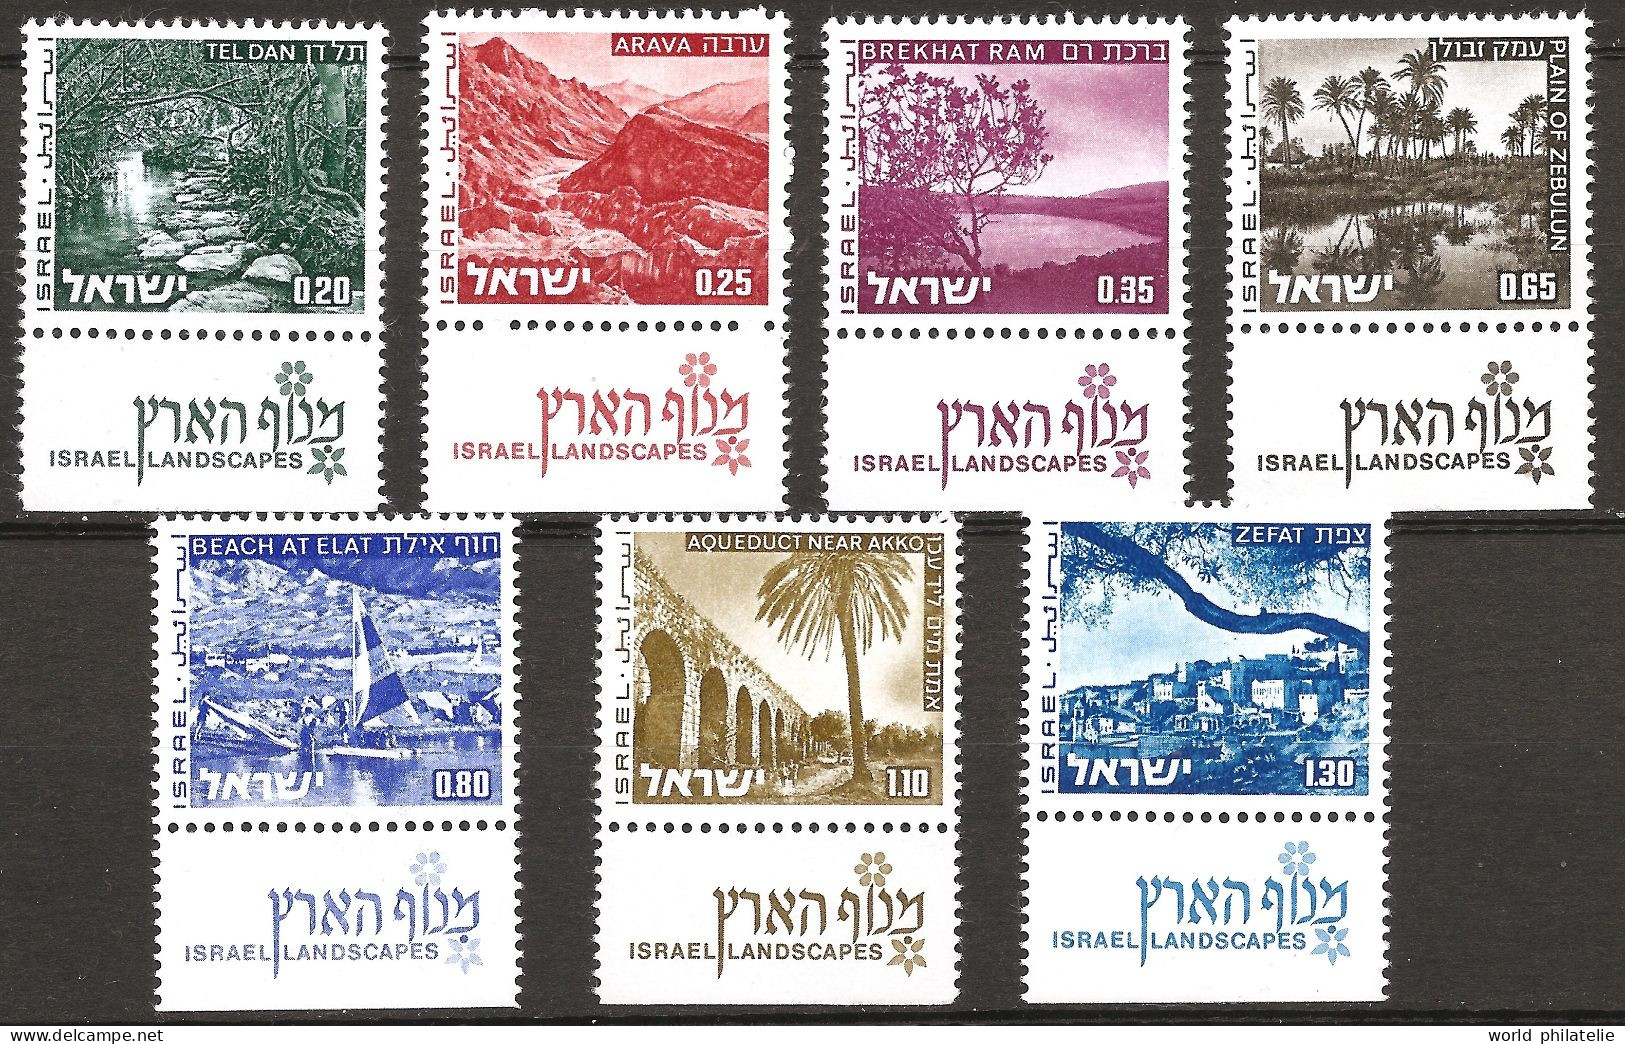 Israël Israel 1973 N° 532 / 8 Avec Tab ** Rivière, Montagne, Arava, Planche à Voile, Aqueduc, Tel-Dan, Plage, Eilat Acre - Ungebraucht (mit Tabs)